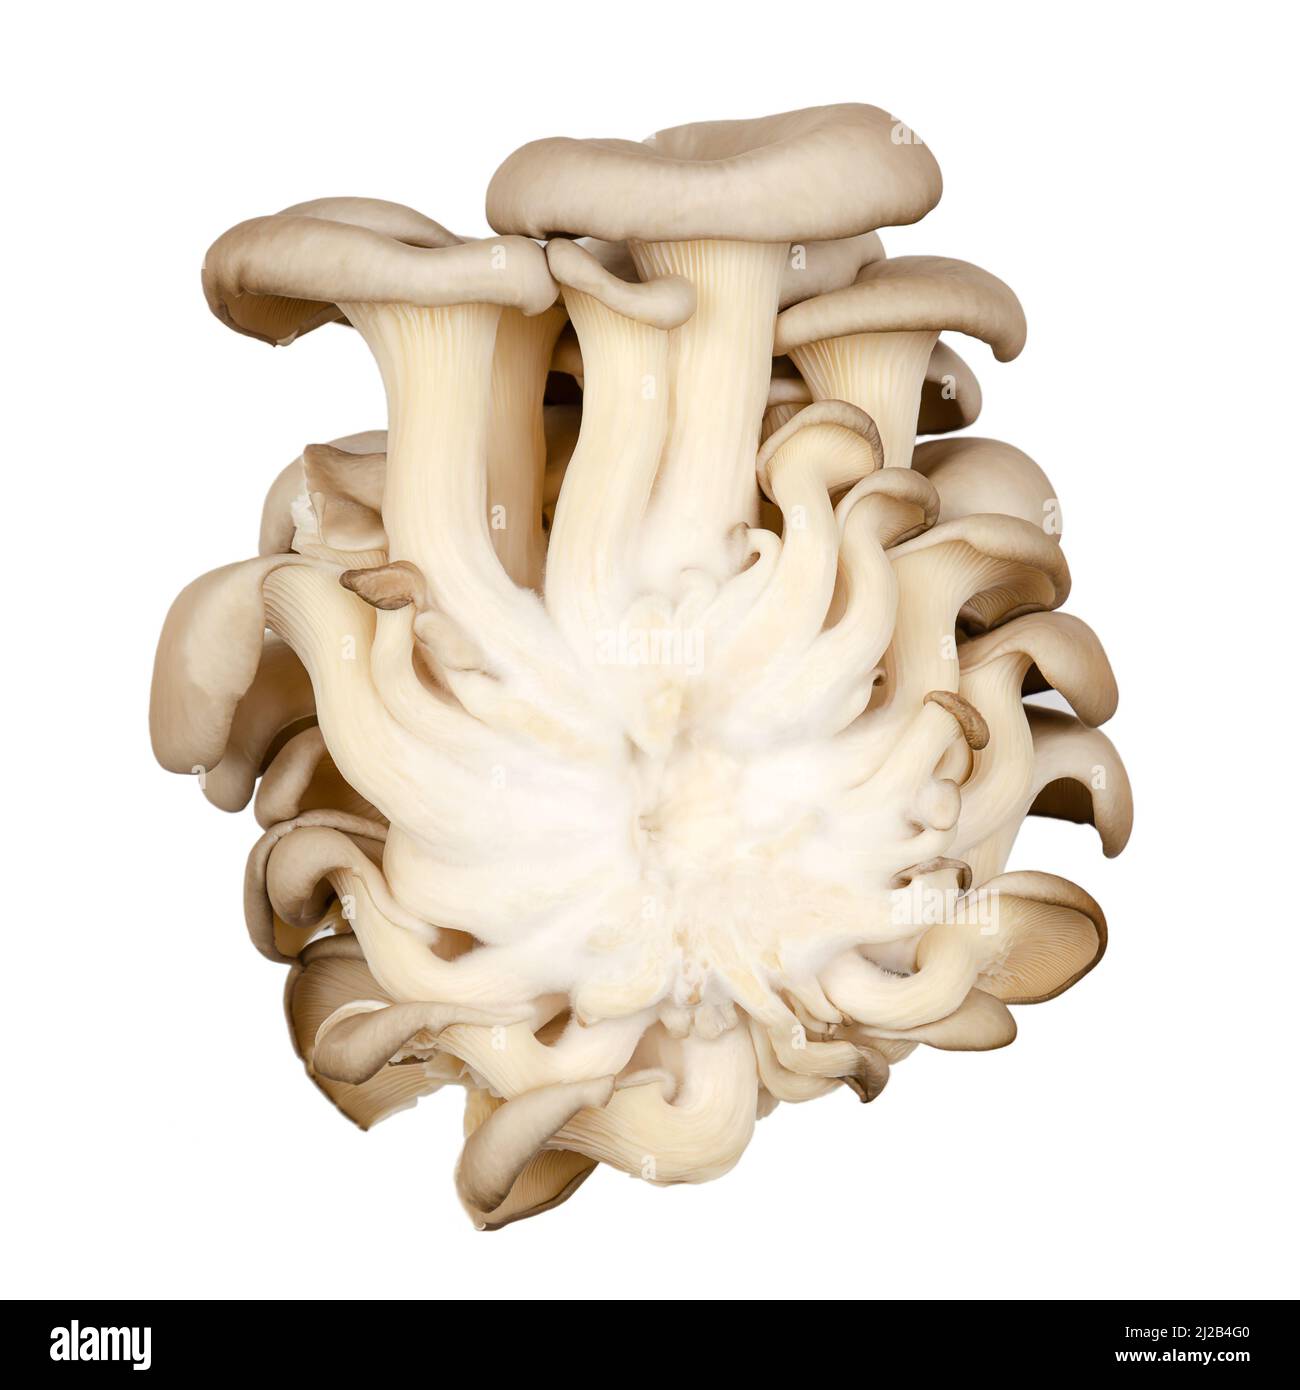 Gruppo di funghi di ostriche freschi, vista posteriore. Pleurotus, noto anche come abalone o funghi di albero. Uno dei funghi più coltivati. Foto Stock